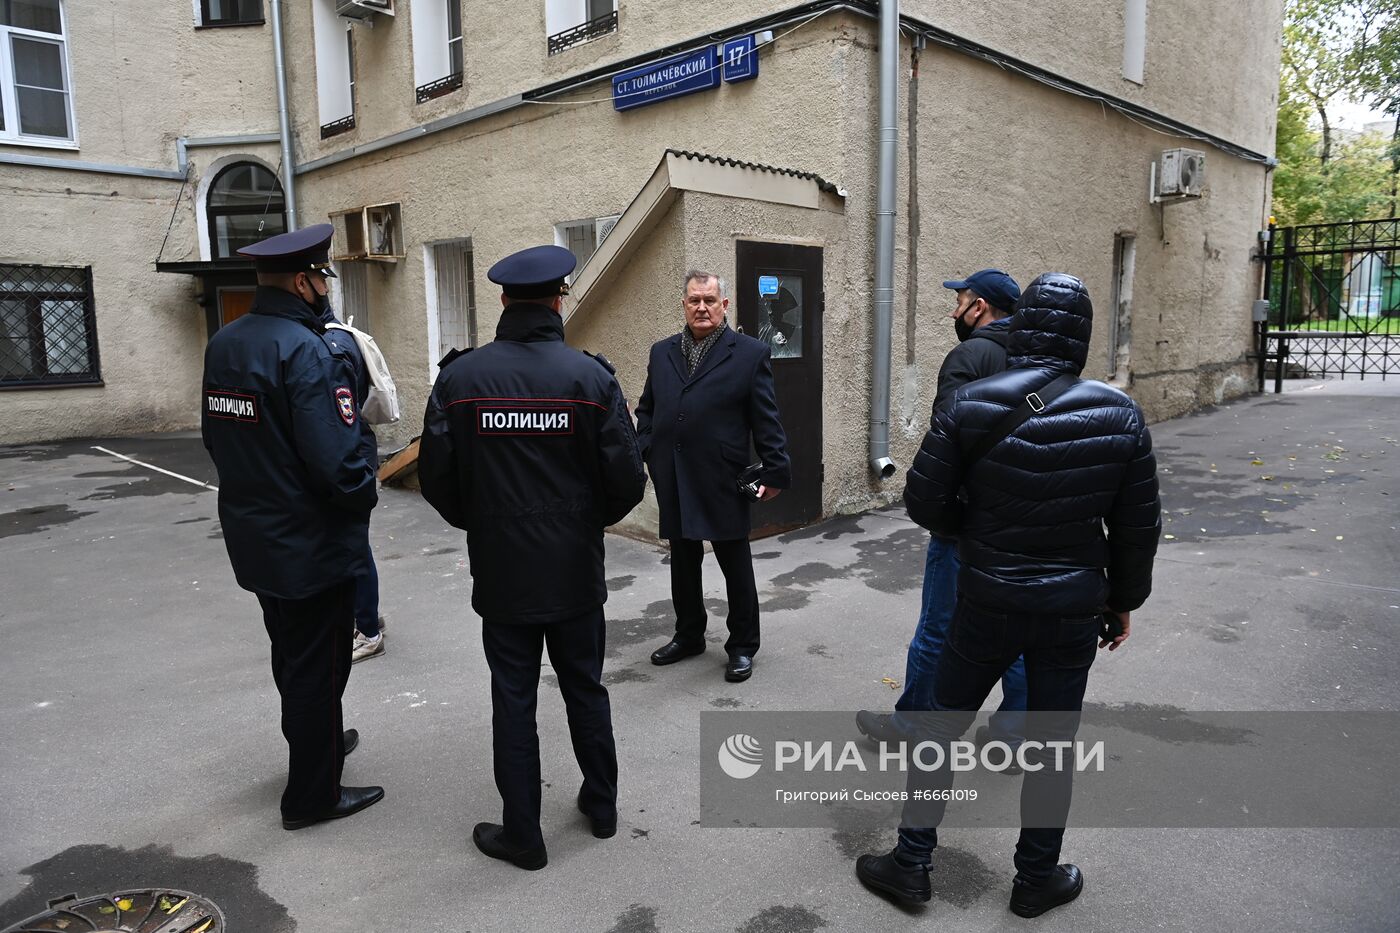 Сотрудники полиции пришли в приемную И. Мельникова с исками по голосованию